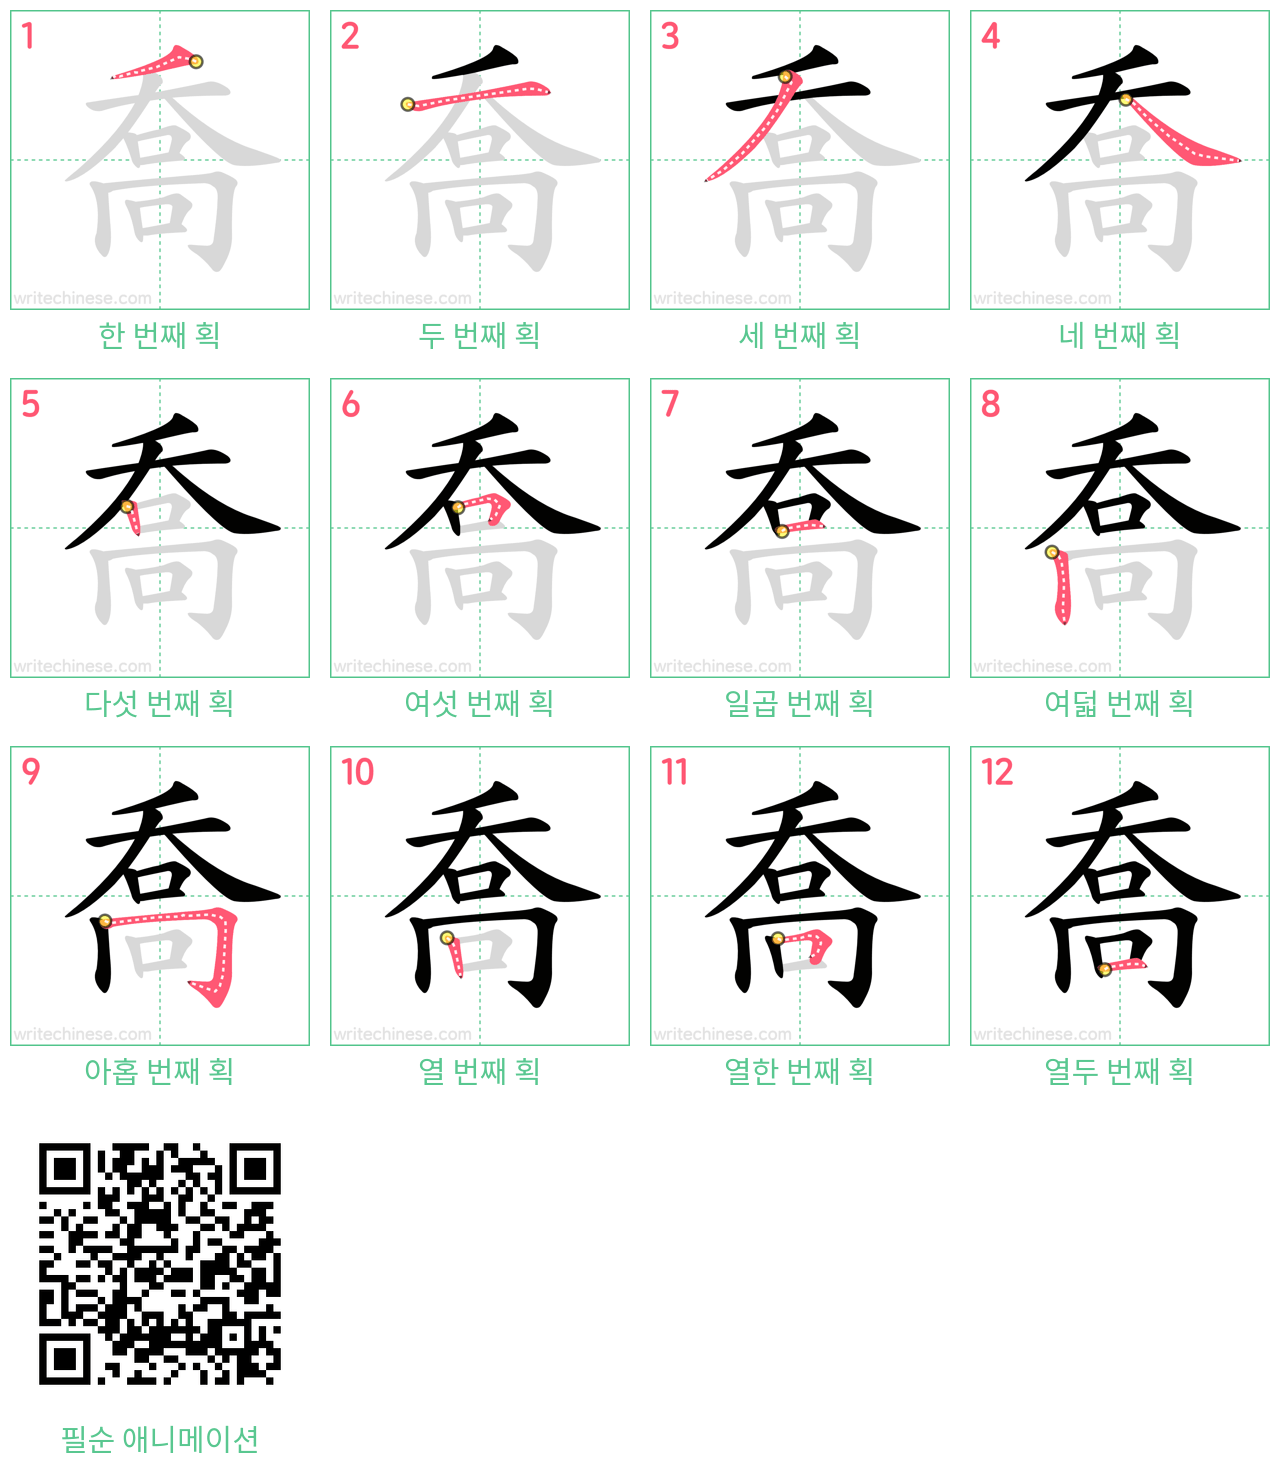 喬 step-by-step stroke order diagrams